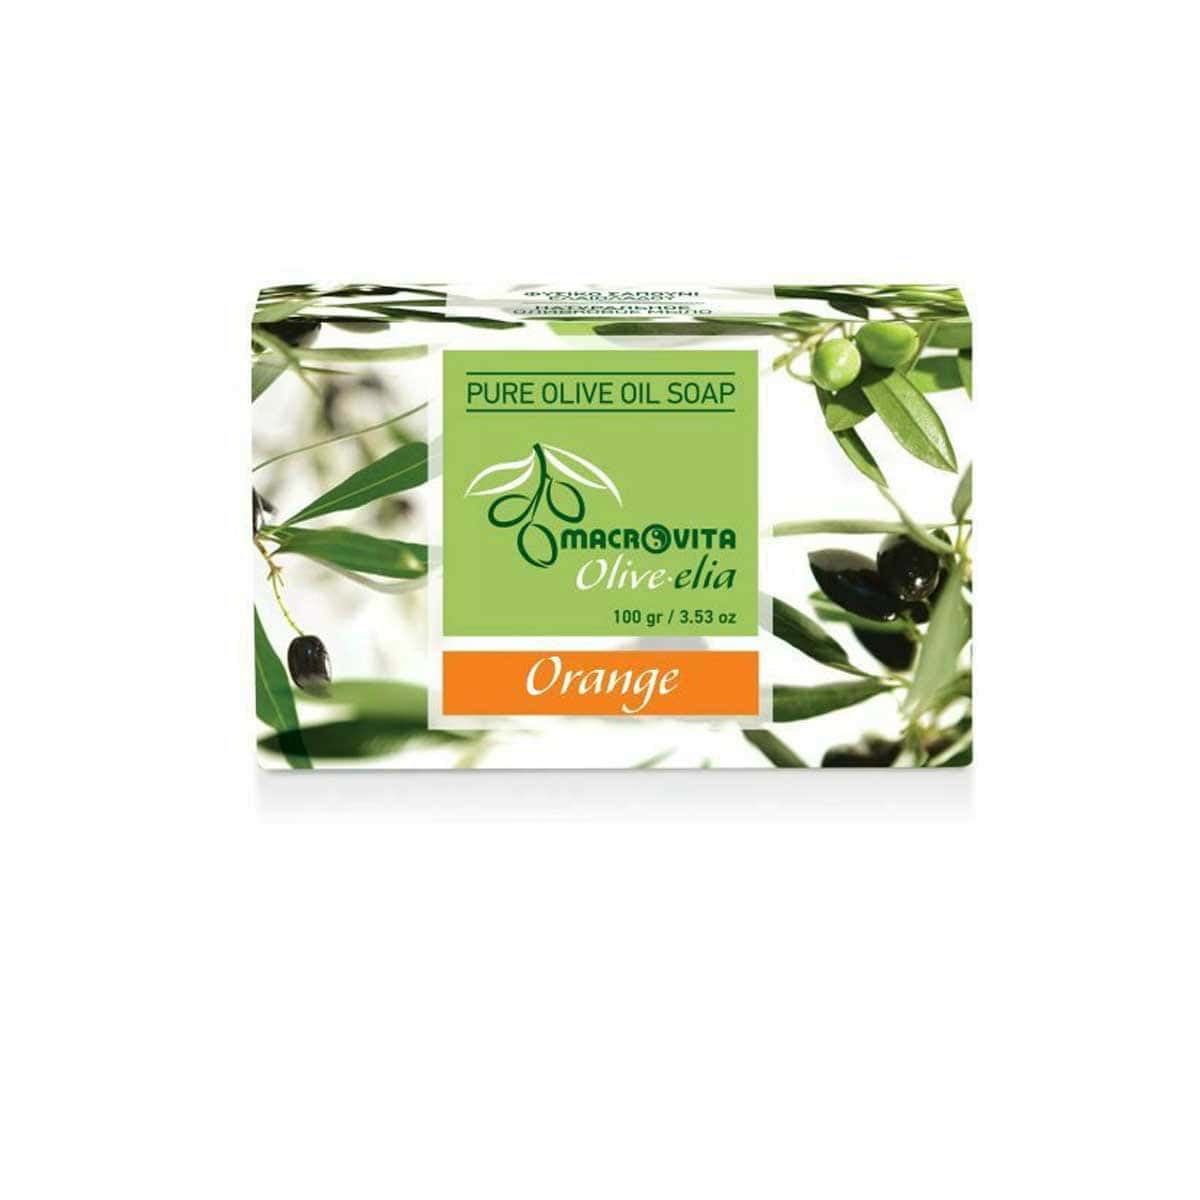 Macrovita-Pure-Olive-Oil-Soap-Orange-100-gr-5200316331651